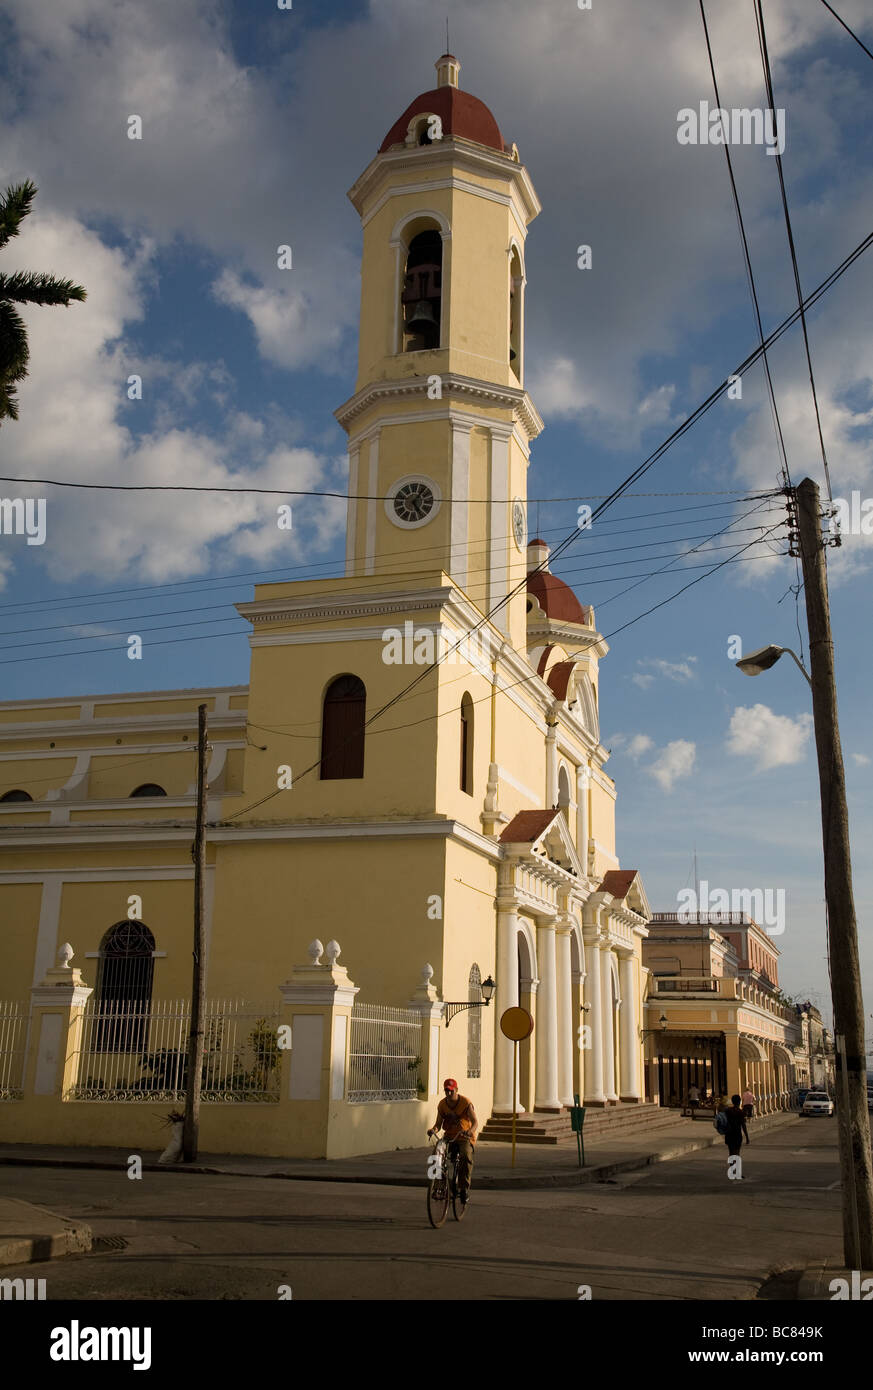 Catedral (cathedral) de la Purisima Concepcion on Parque Jose Marti Cienfuegos, Cuba Stock Photo